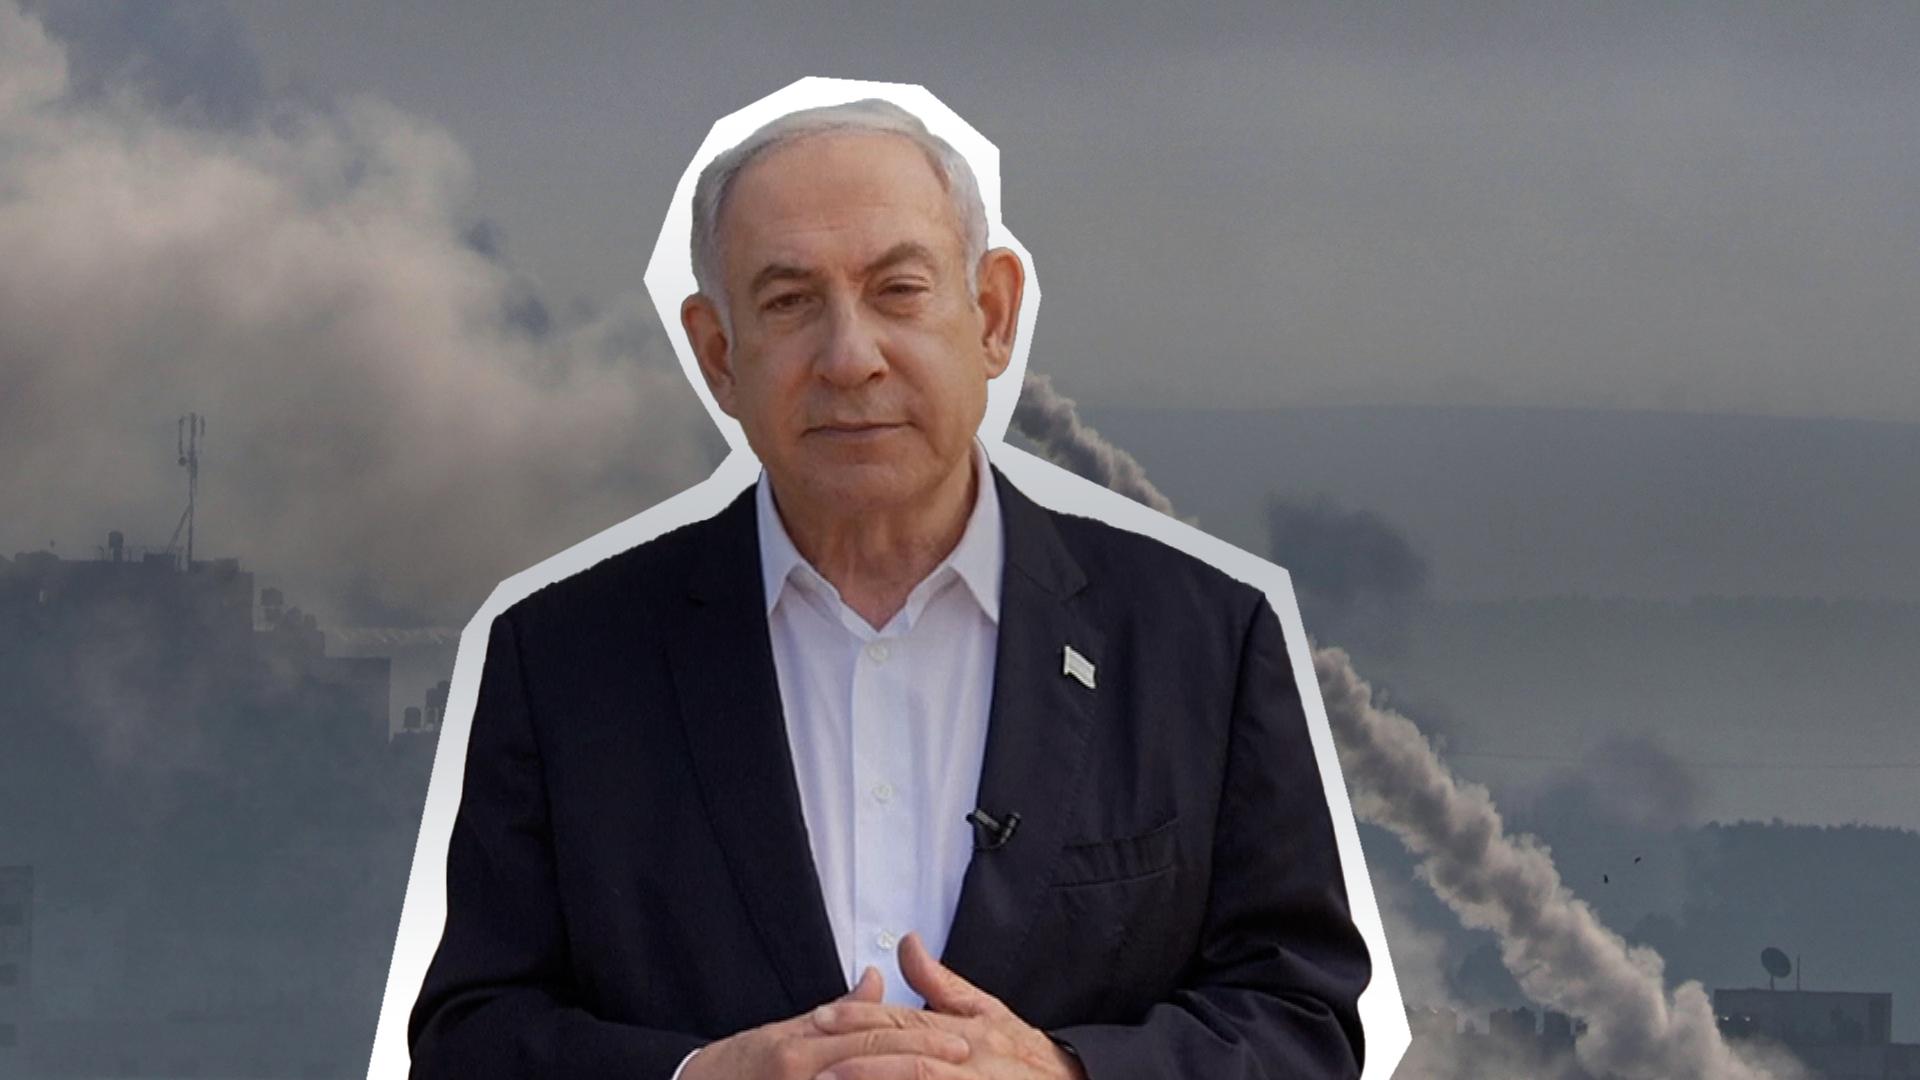 Die Hamas haben Israel massiv mit Raketen beschossen. Israels Ministerpräsident Netanjahu sagt: "Wir sind im Krieg"